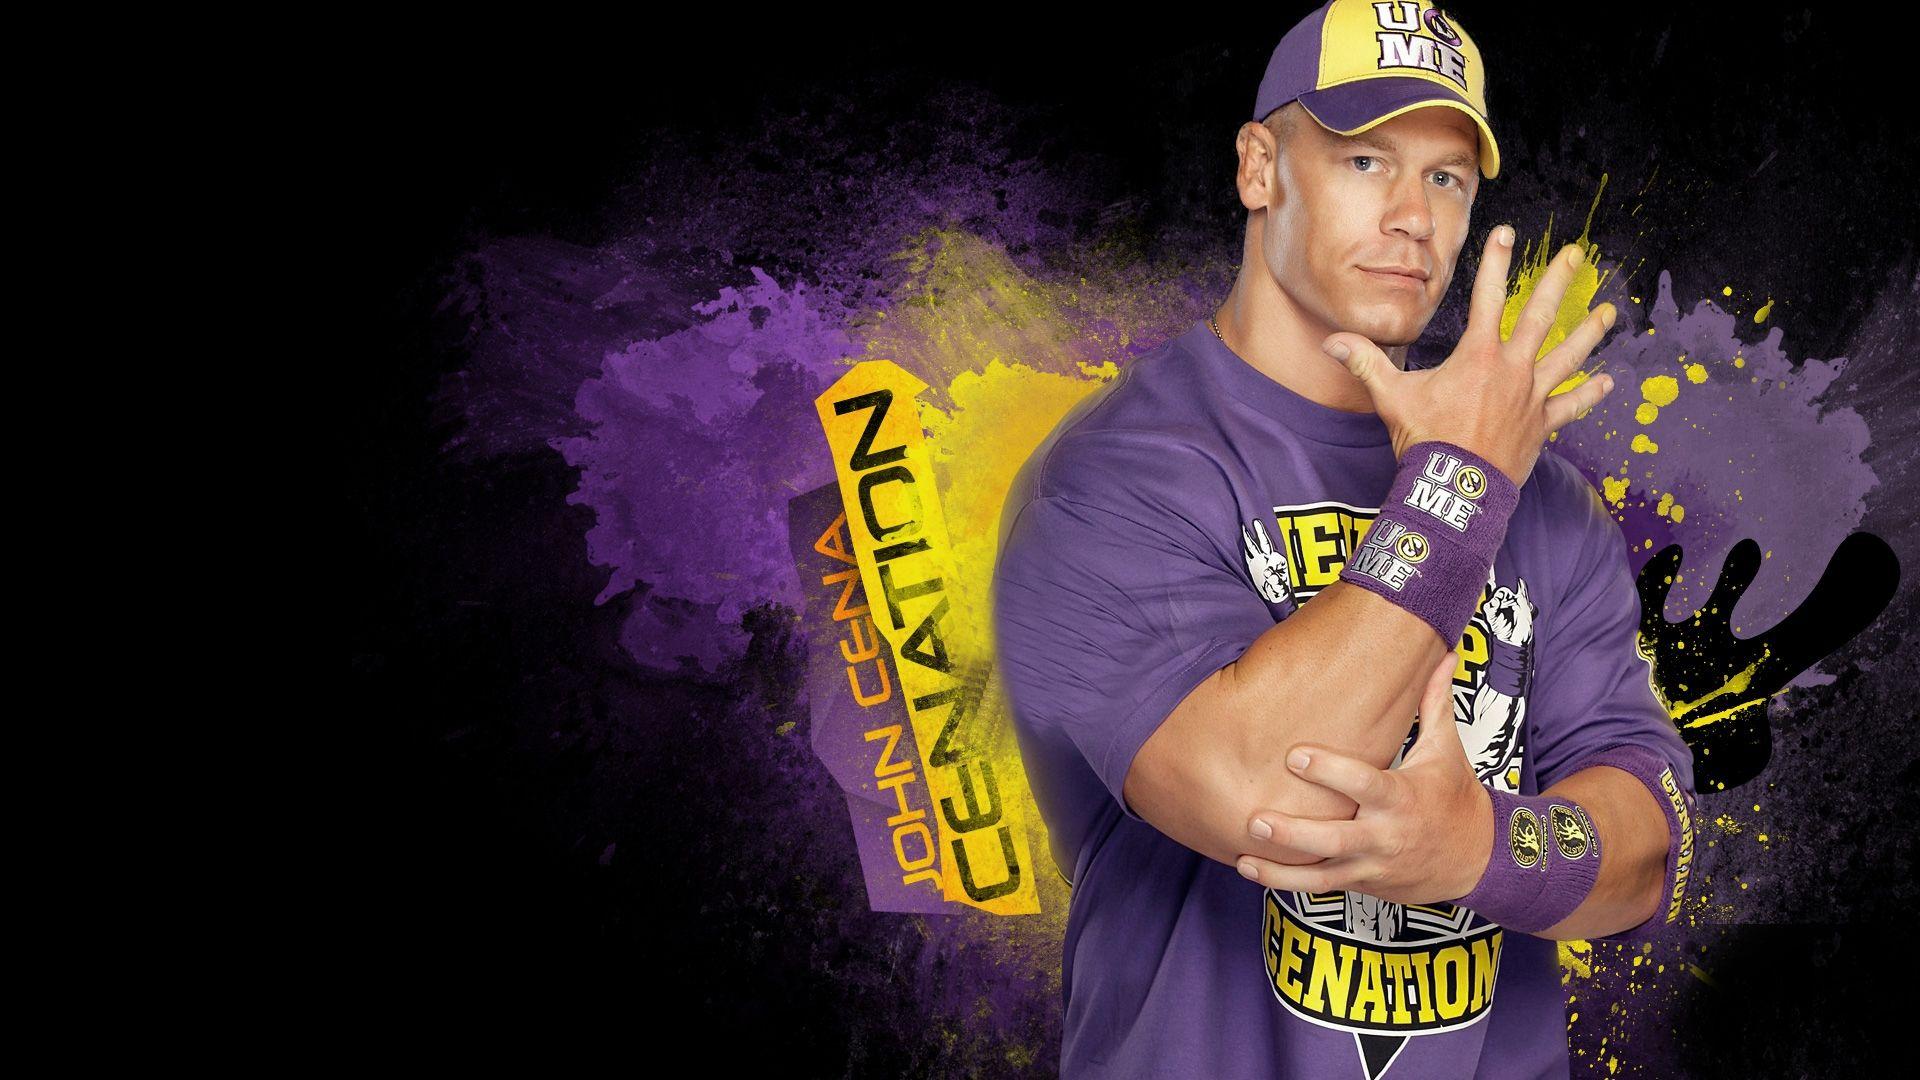 John Cena WWe Superstar Wallpaper. HD Desktop Background